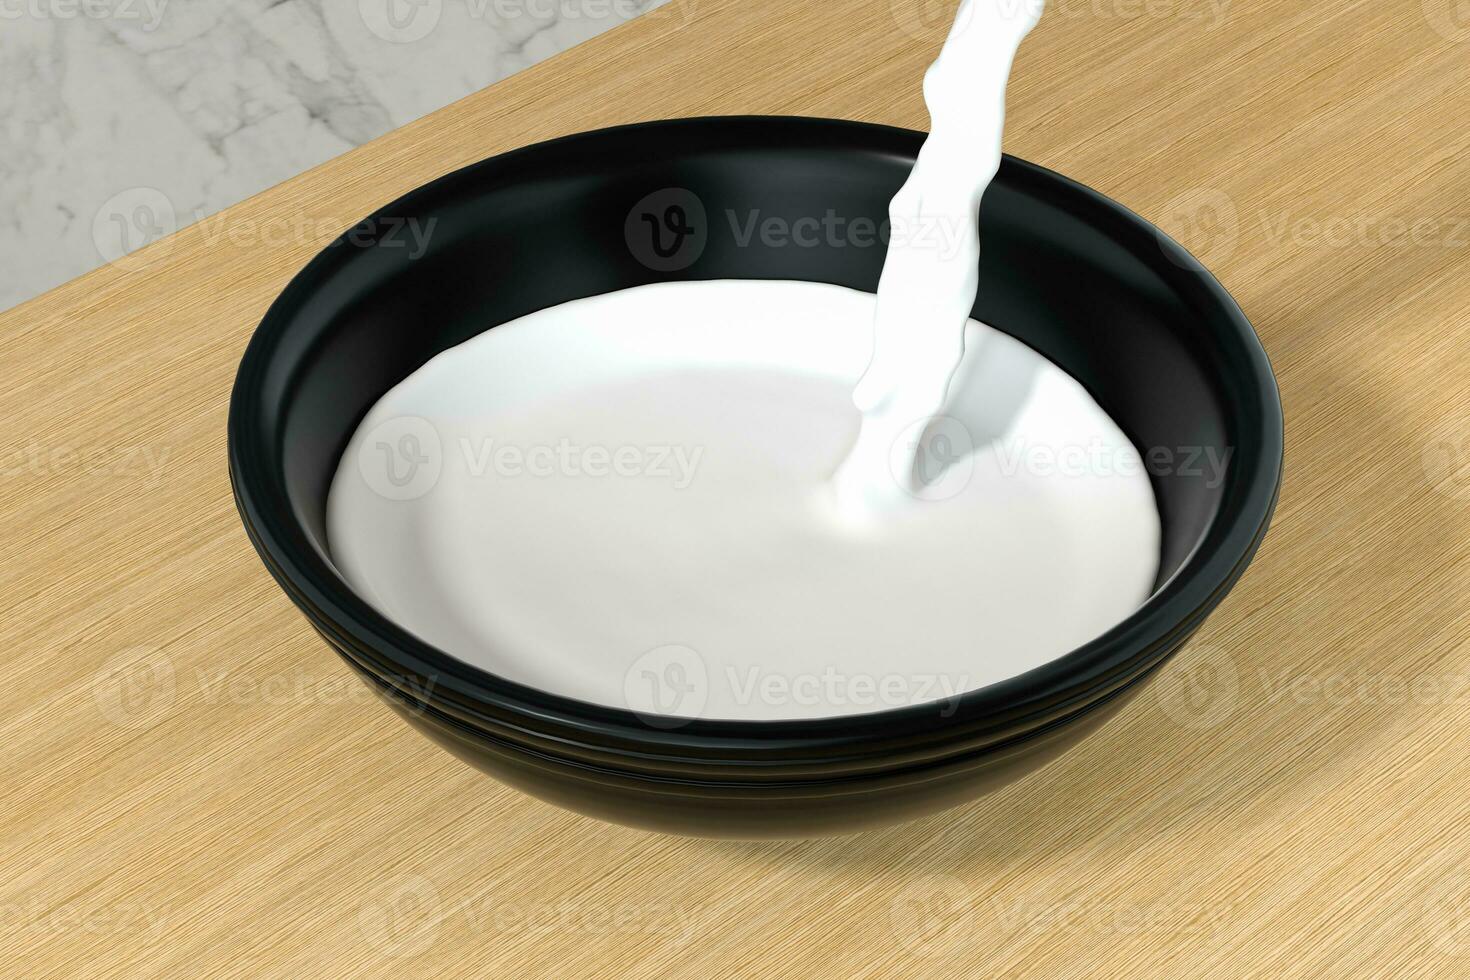 en skål av mjölk och stänk flytande, 3d tolkning. foto